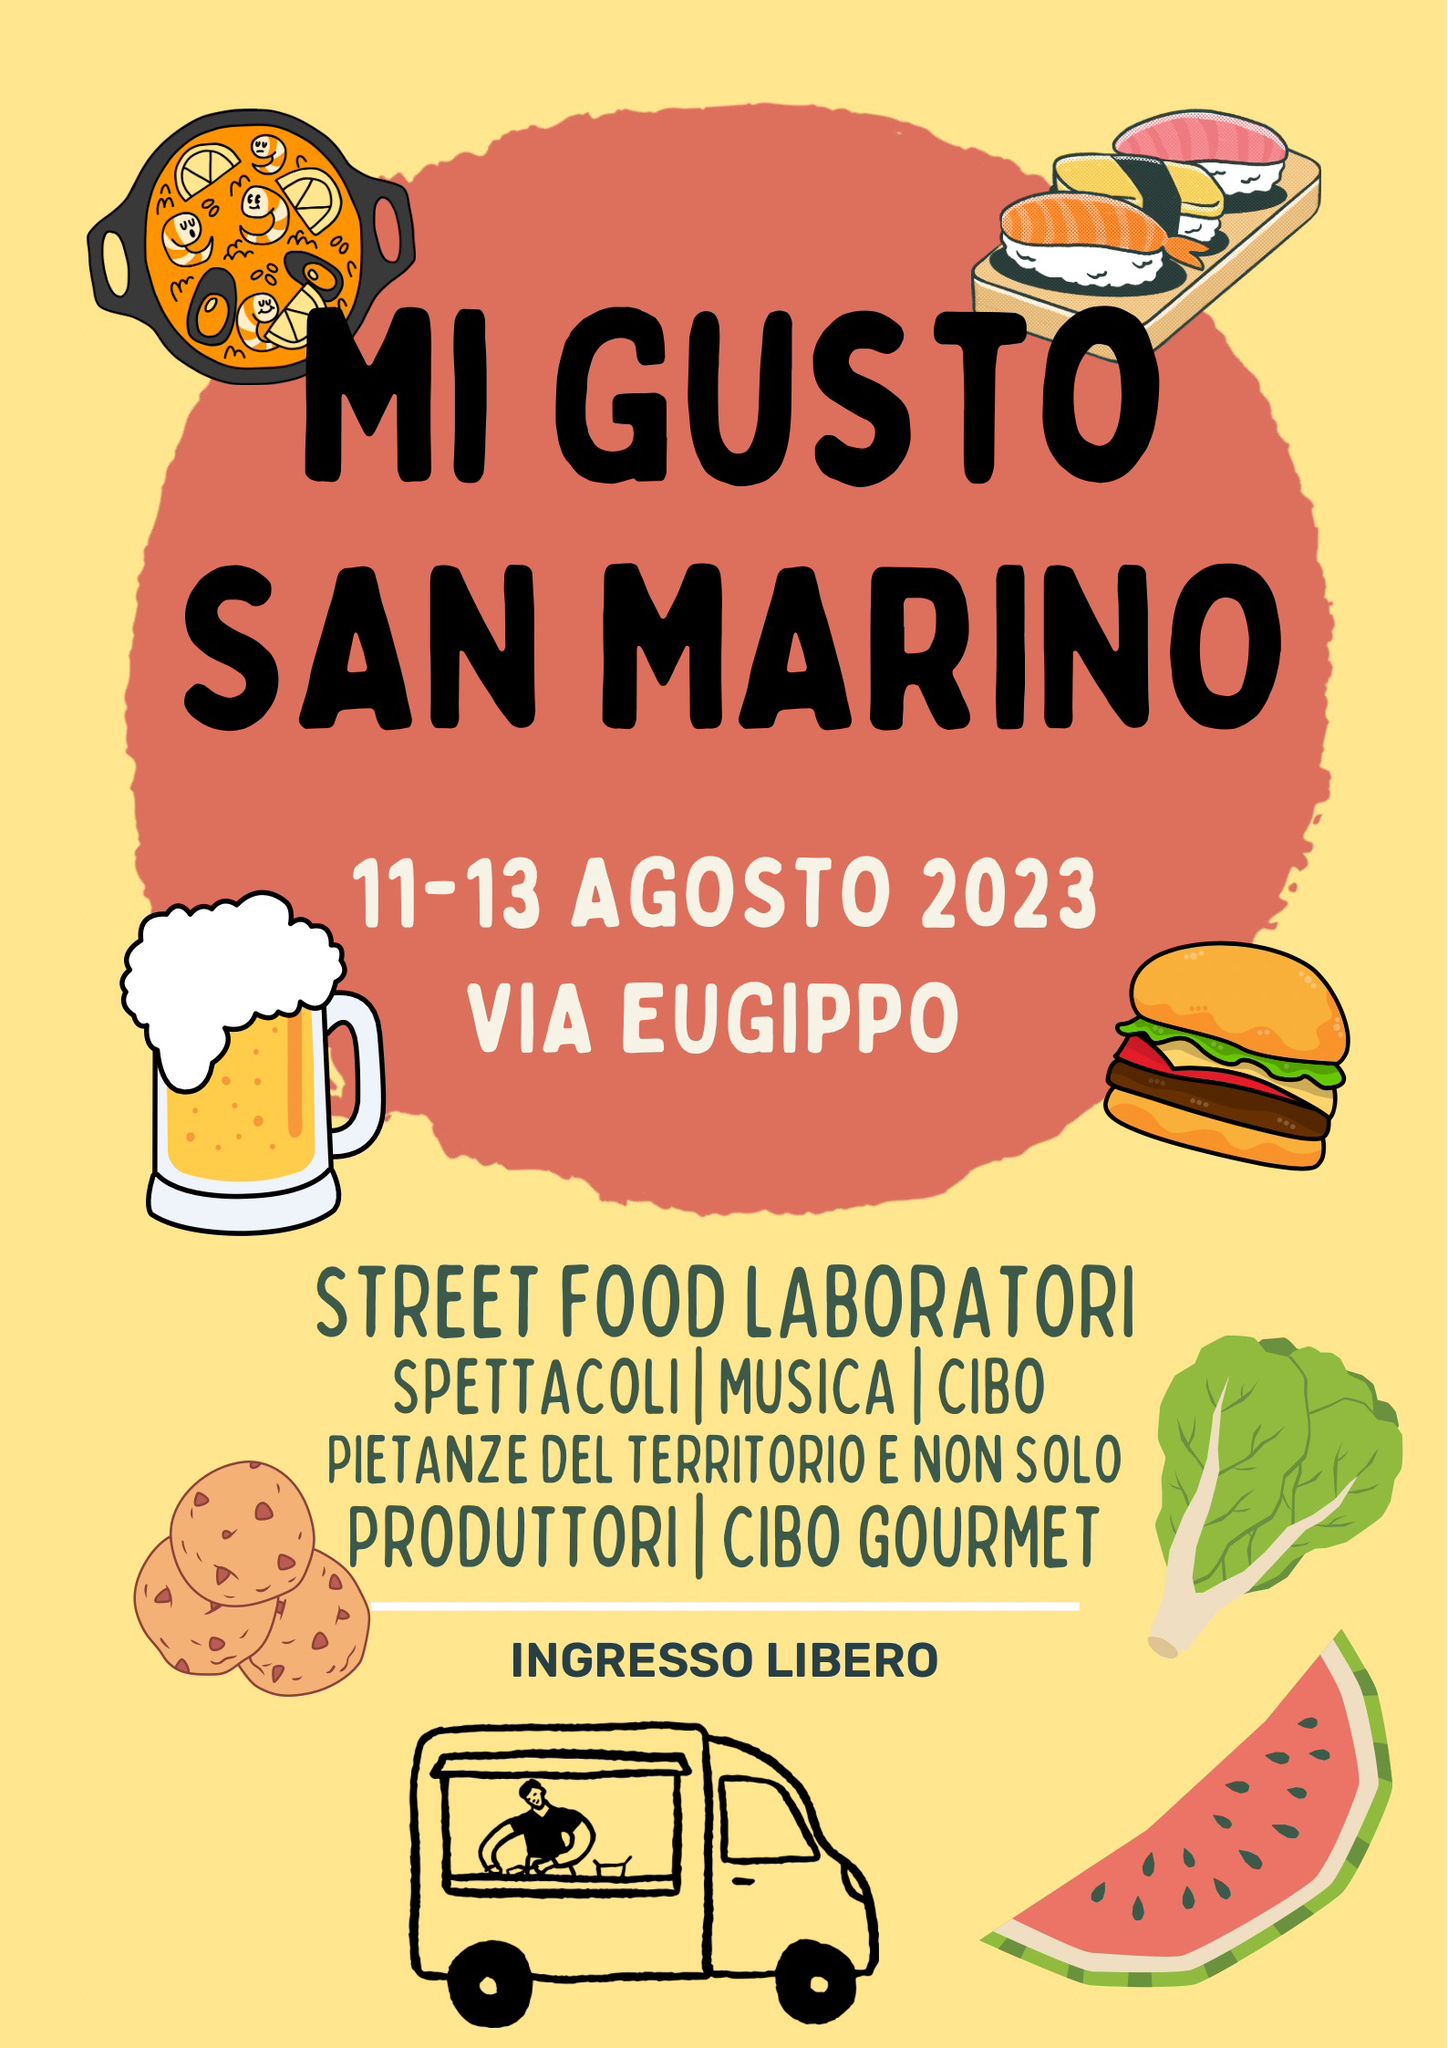 Torna l’appuntamento gastronomico “Mi gusto San Marino” dall’11 al 13 agosto